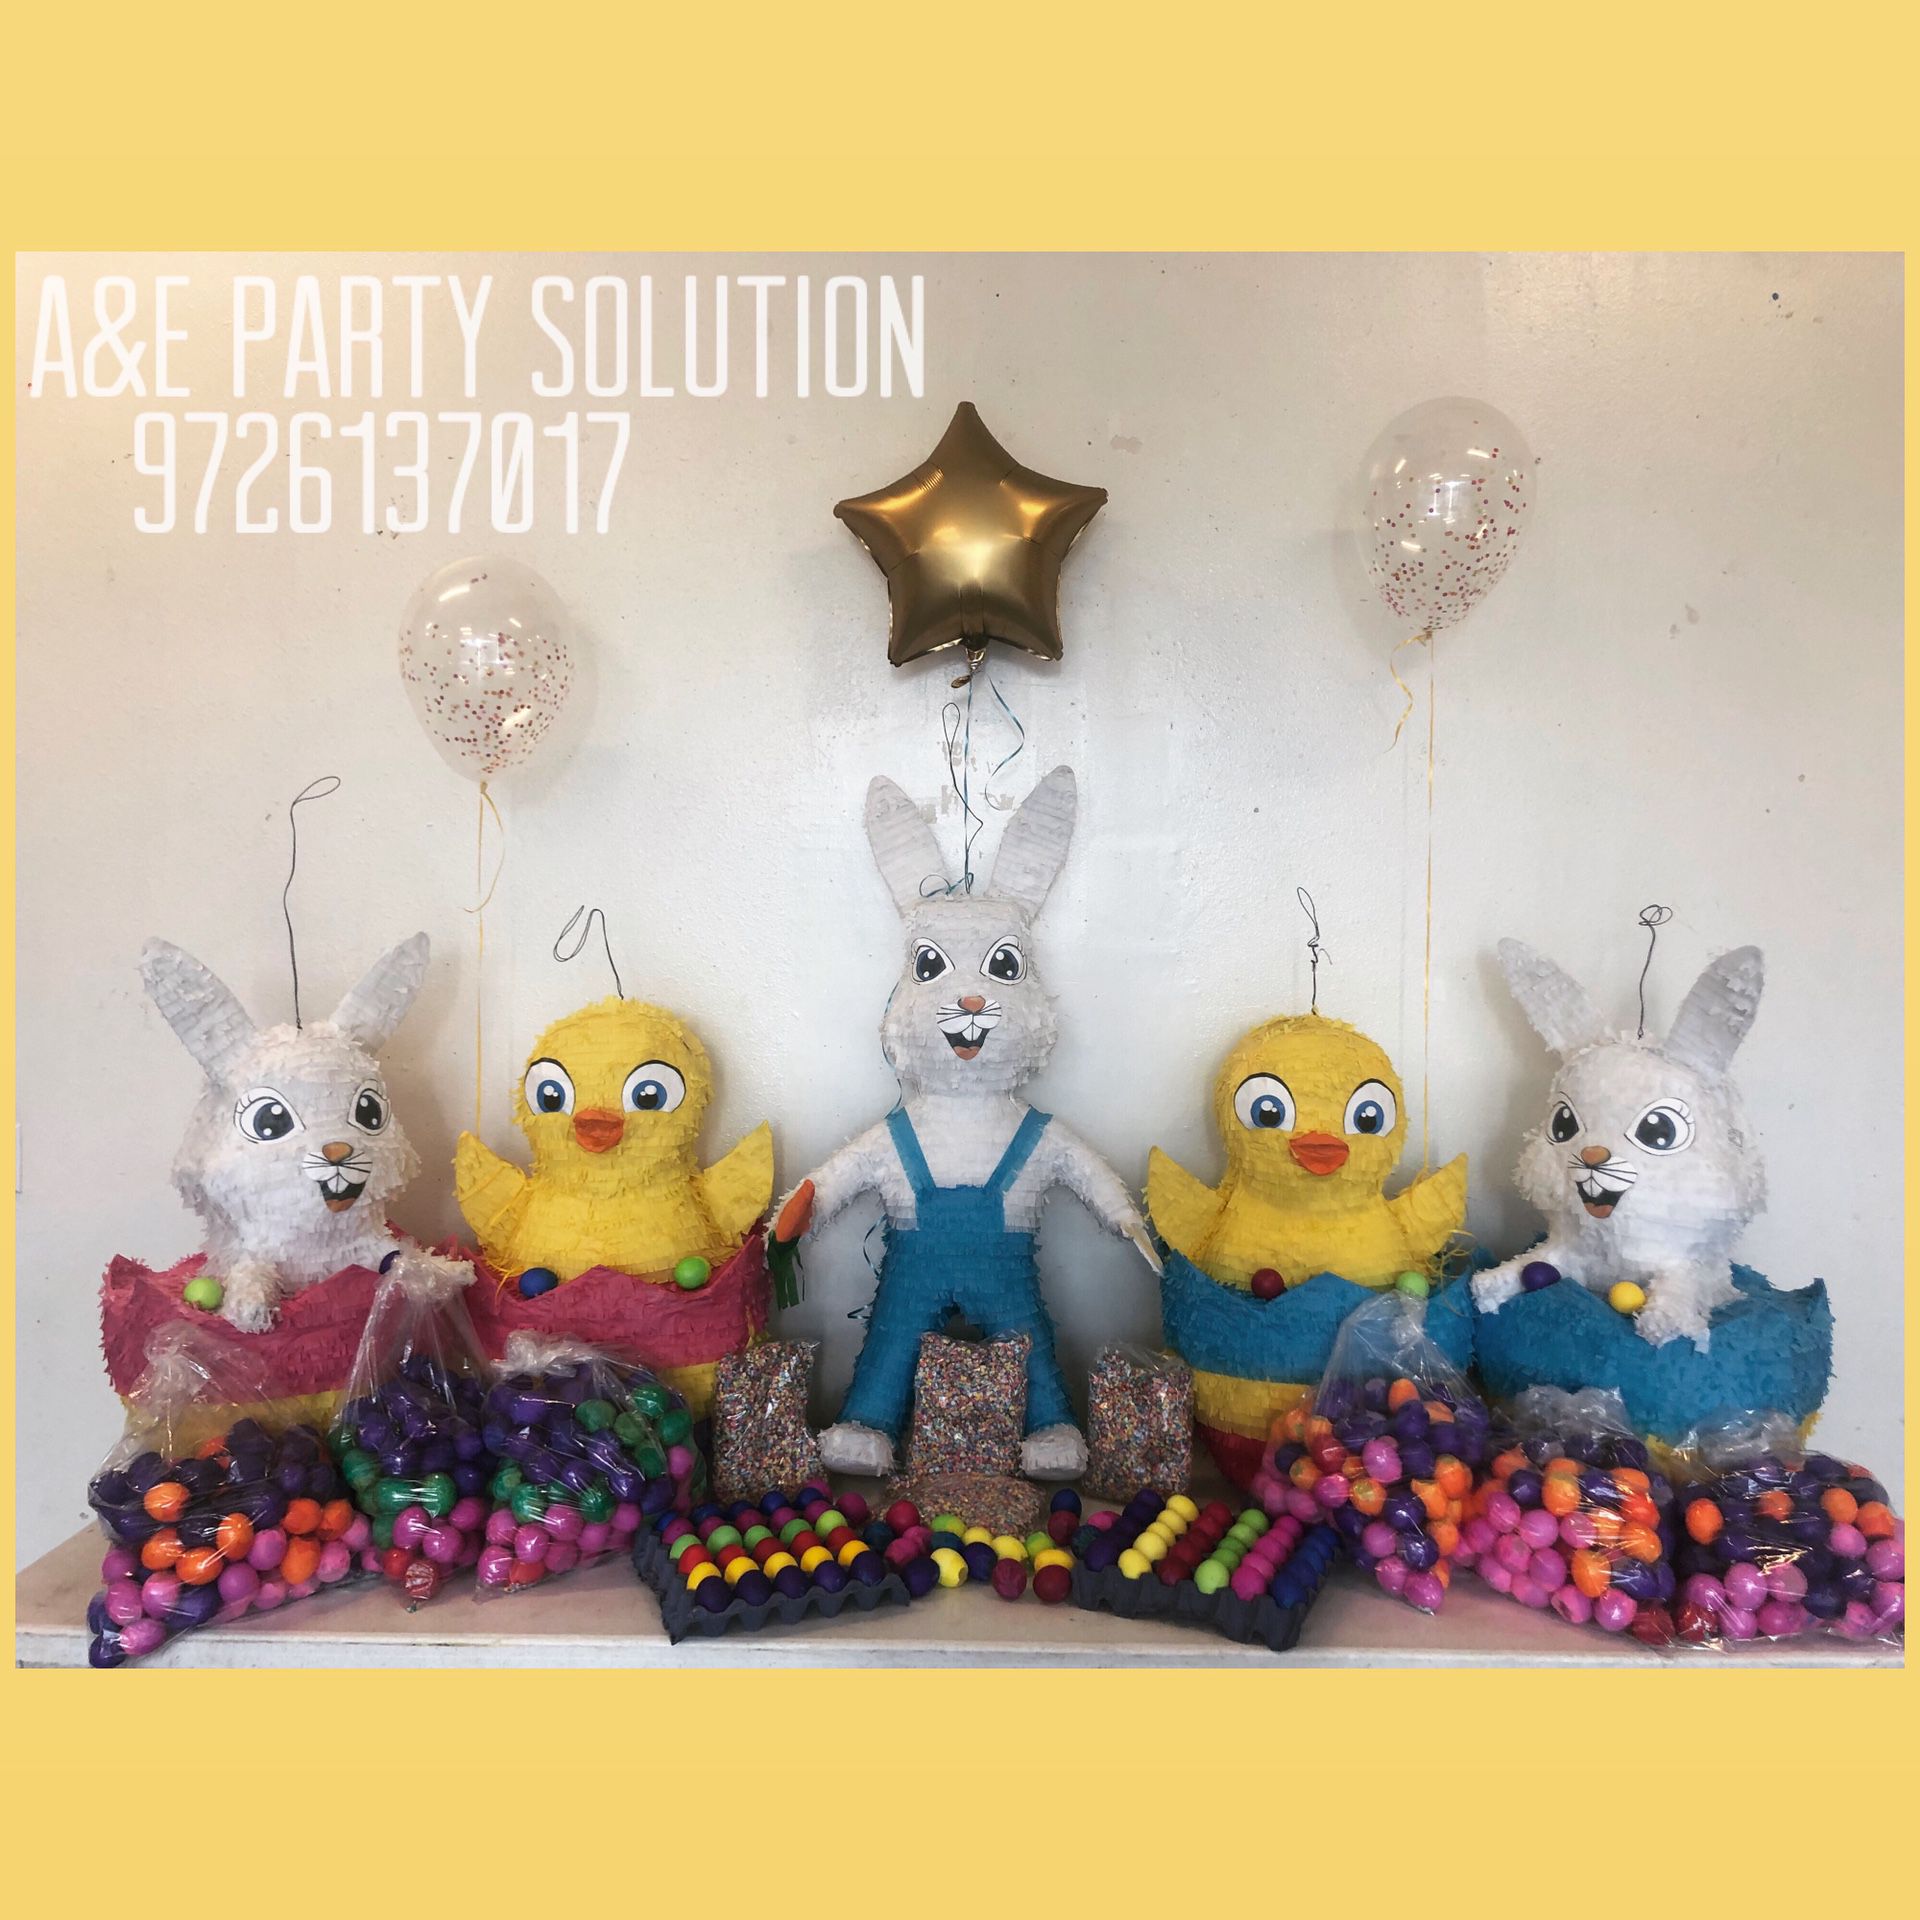 Confetti eggs and Easter piñatas